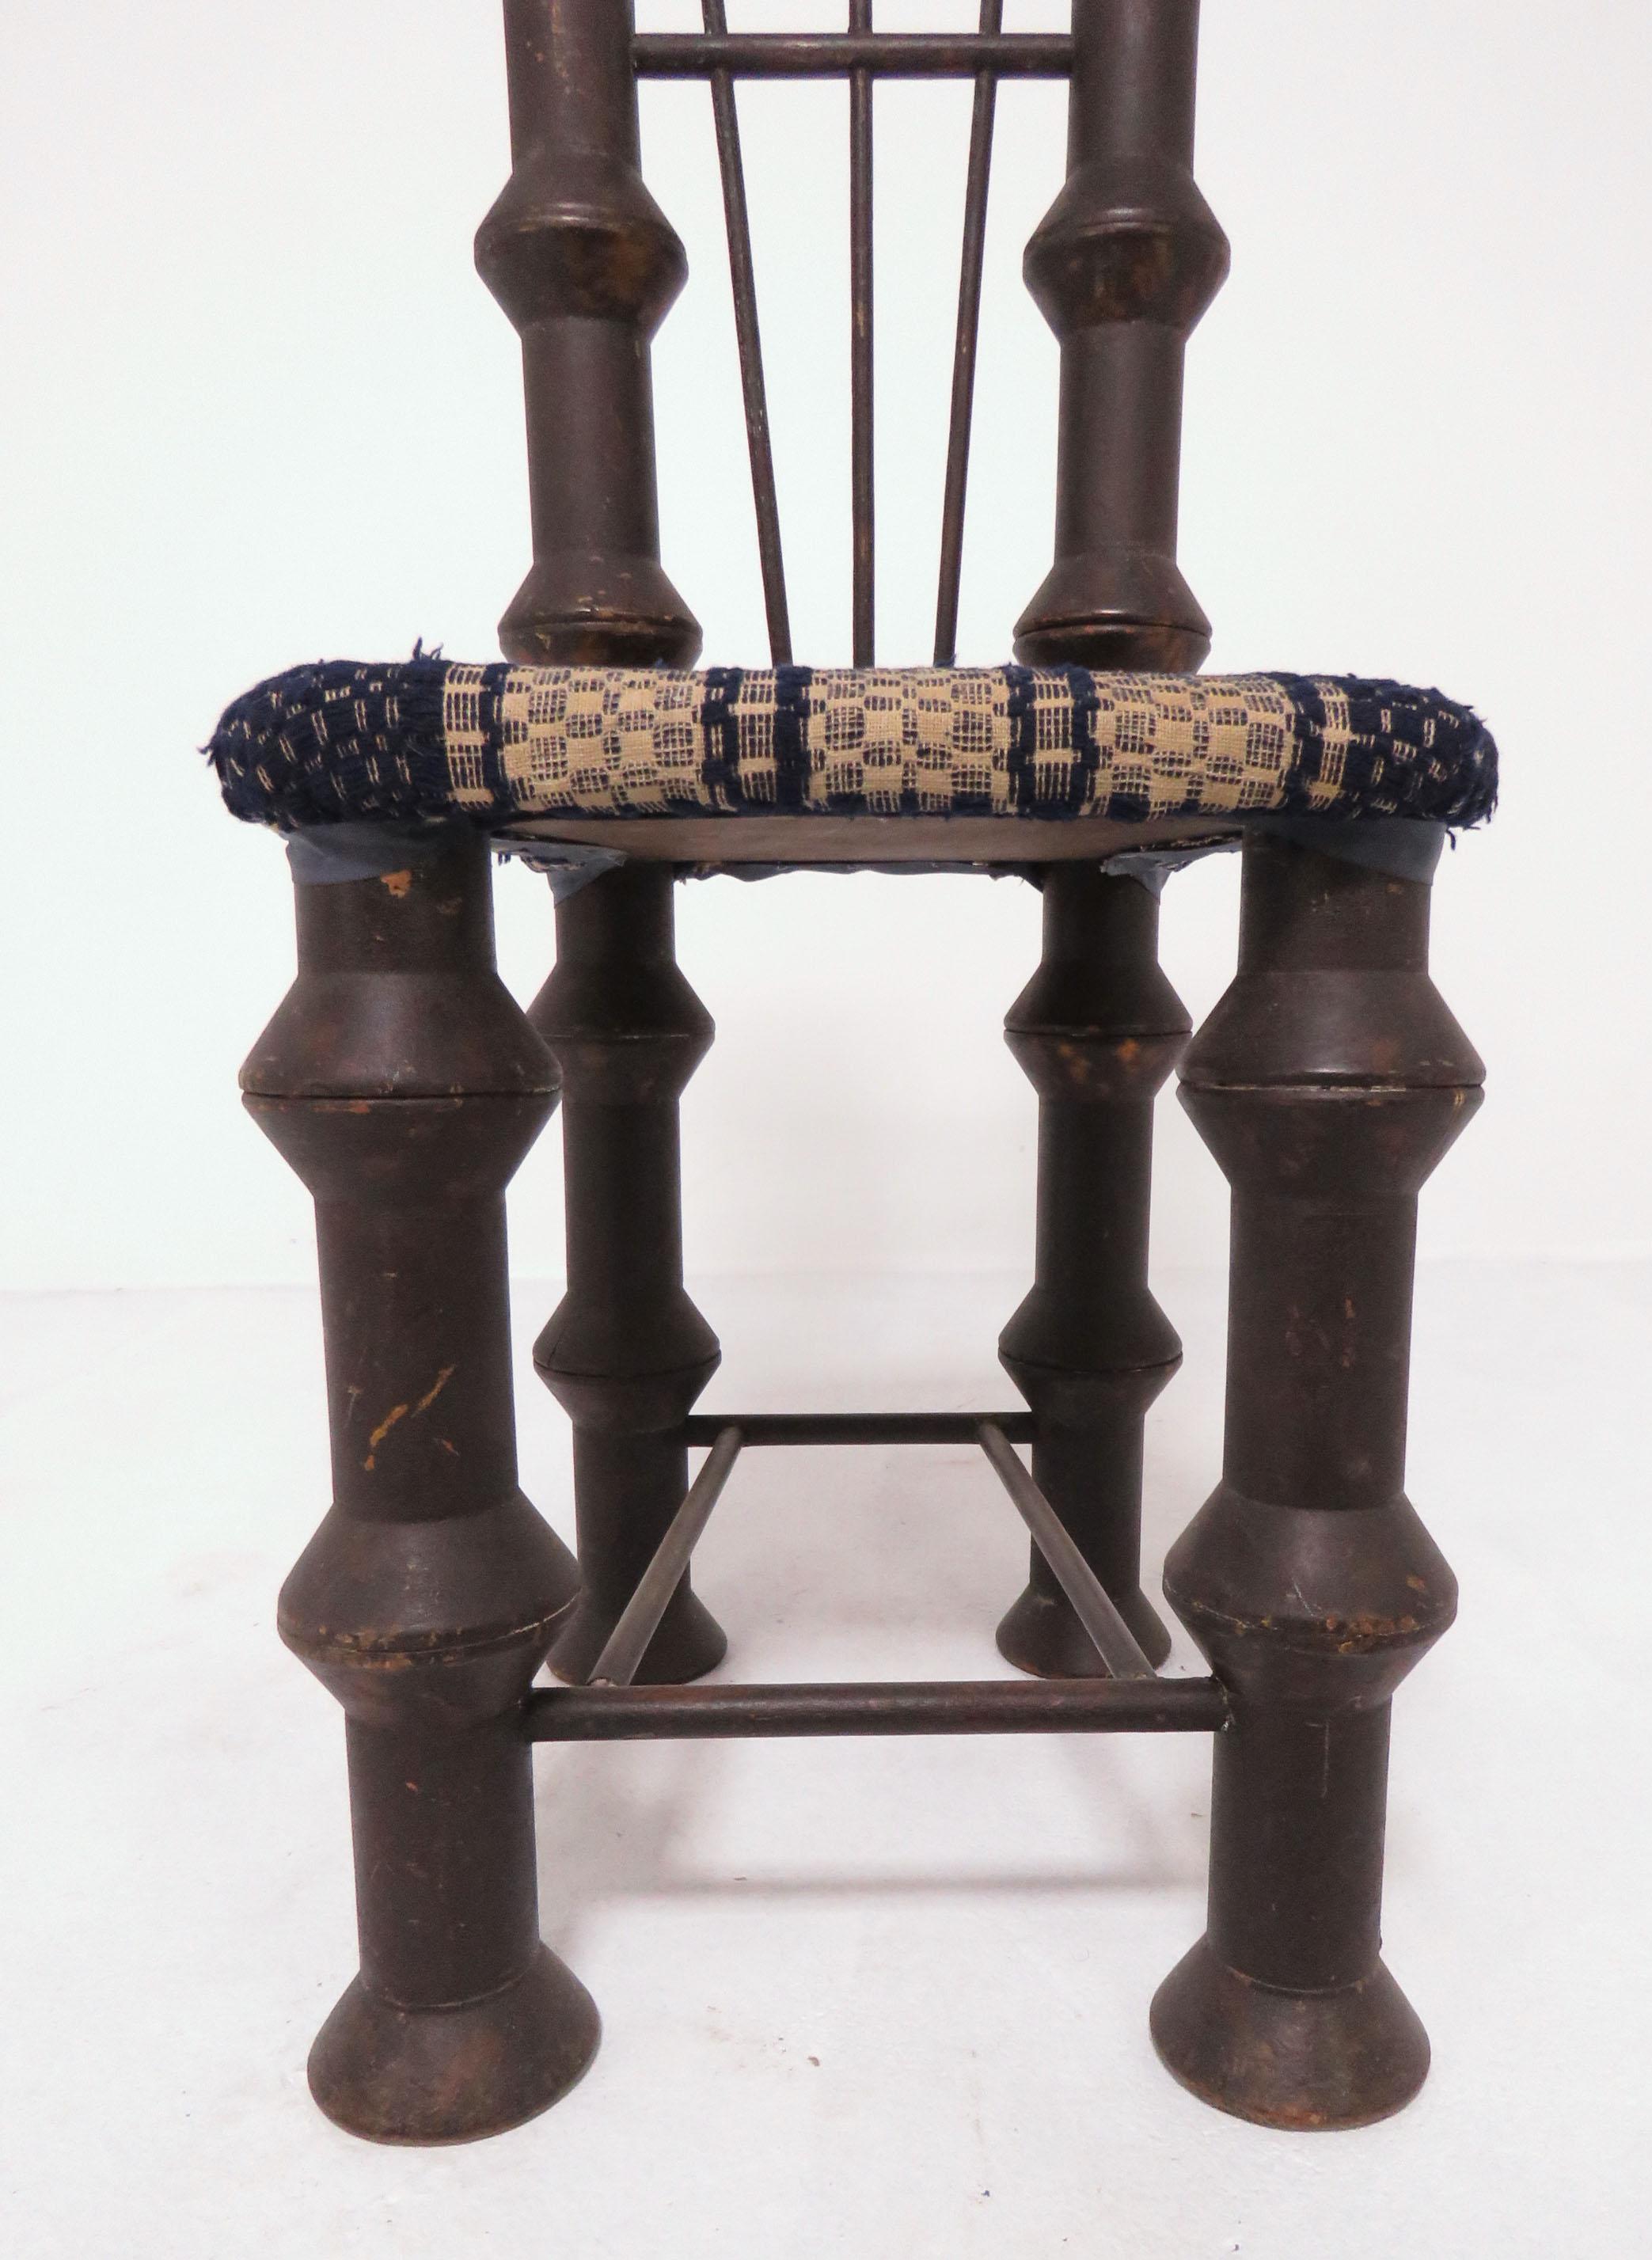 Early 20th Century Folk Art Industrial Era Spool Chair 2